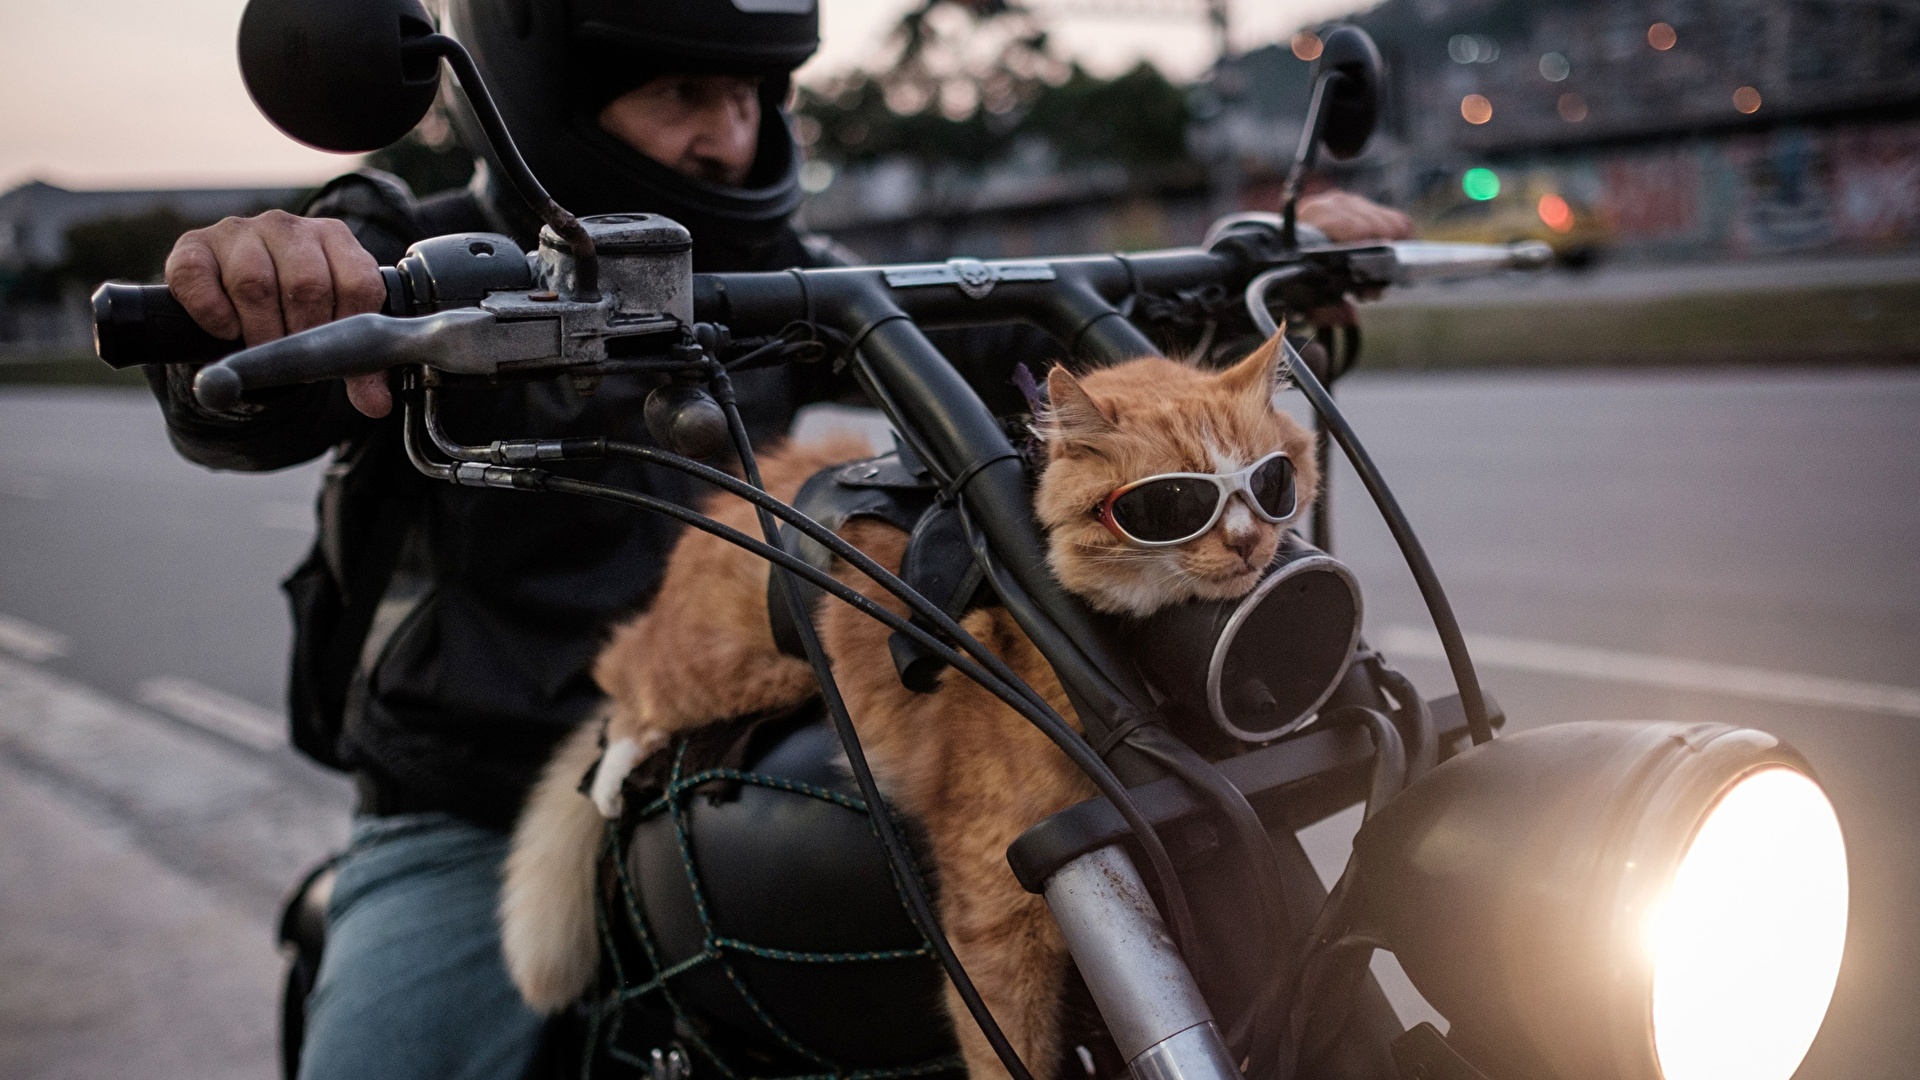 壁紙 19x1080 飼い猫 モーターサイクリスト 眼鏡 おもしろい オートバイ 動物 ダウンロード 写真